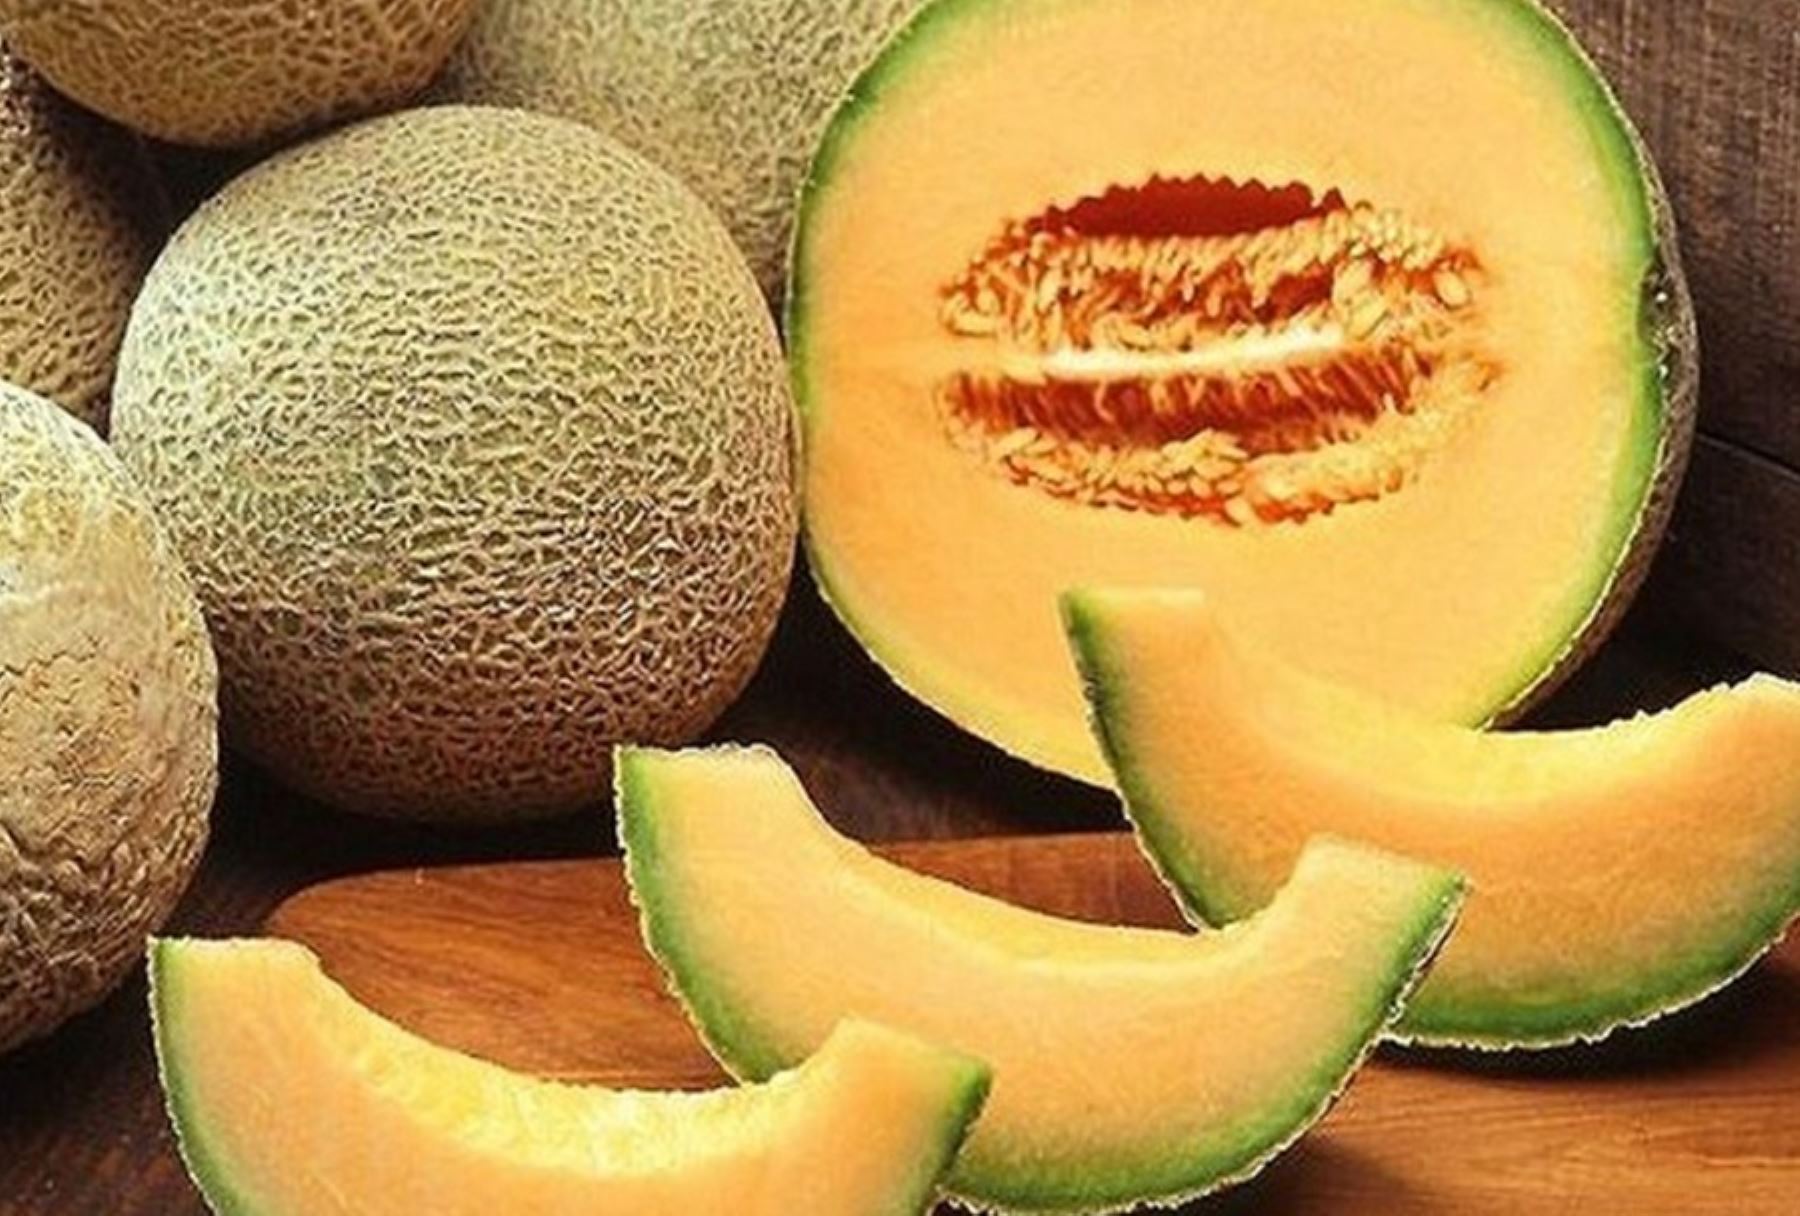 El consumo de melón ayuda a fortalecer el sistema inmunológico, lo que permite que el cuerpo combata diversas enfermedades. Al ser rico en vitaminas, estimula la producción de los glóbulos blancos en el organismo para aumentar la inmunidad.